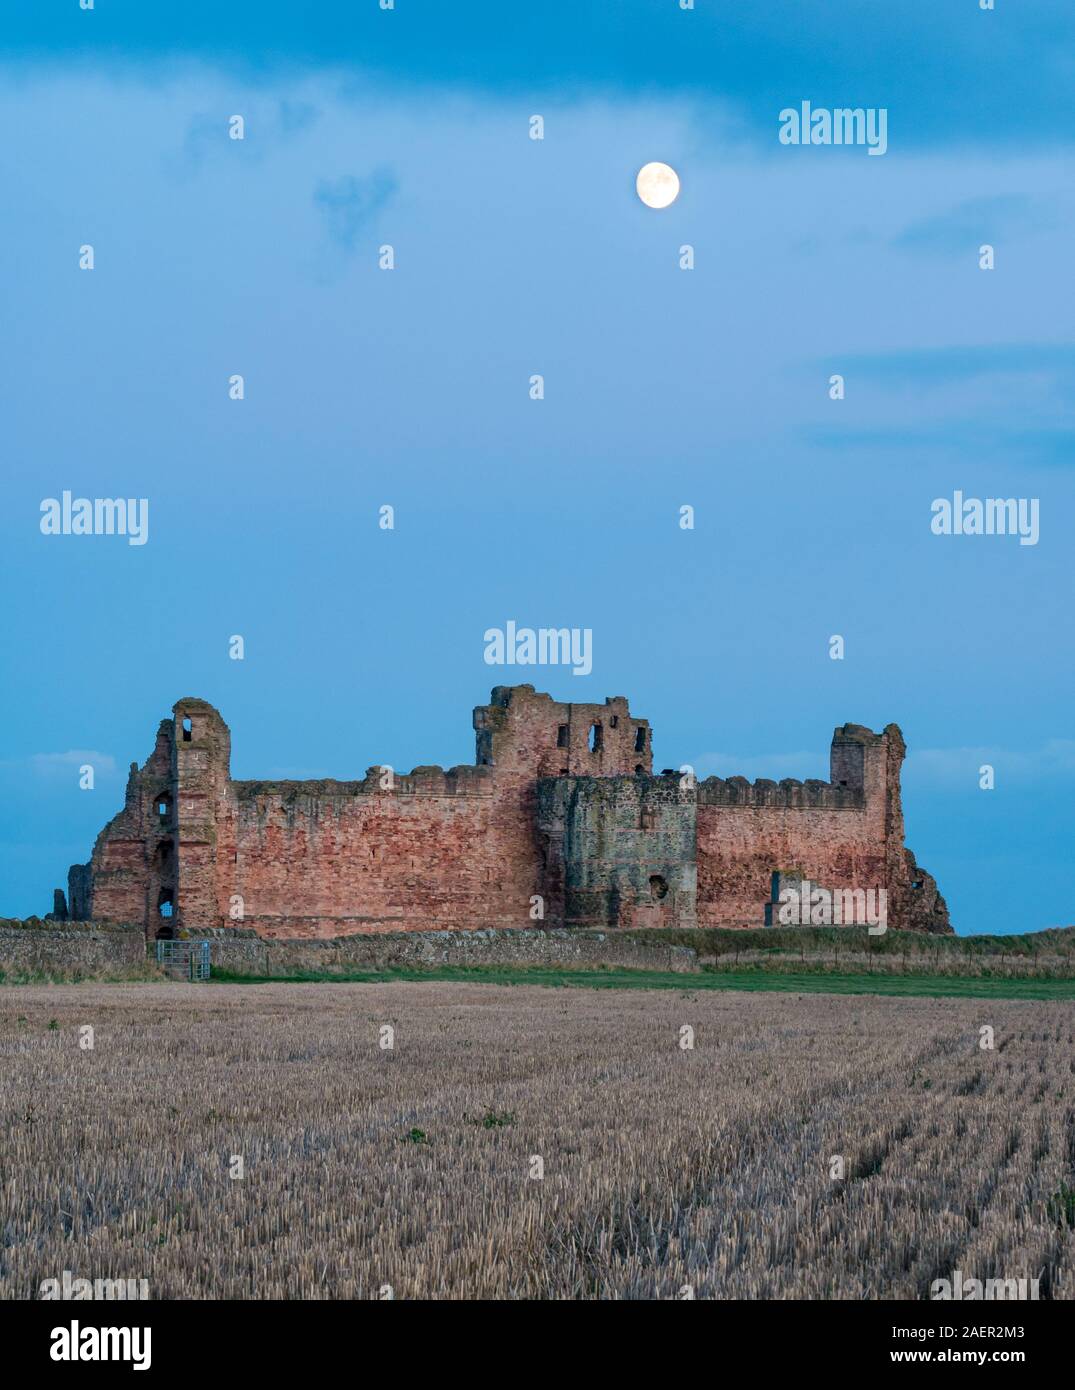 Ein klarer Himmel mit Waxing gibbous Mond über dem zerstörten Vorhangfassade des 14.jahrhunderts Tantallon Castle Ruins steigt, East Lothian, Schottland, Großbritannien Stockfoto